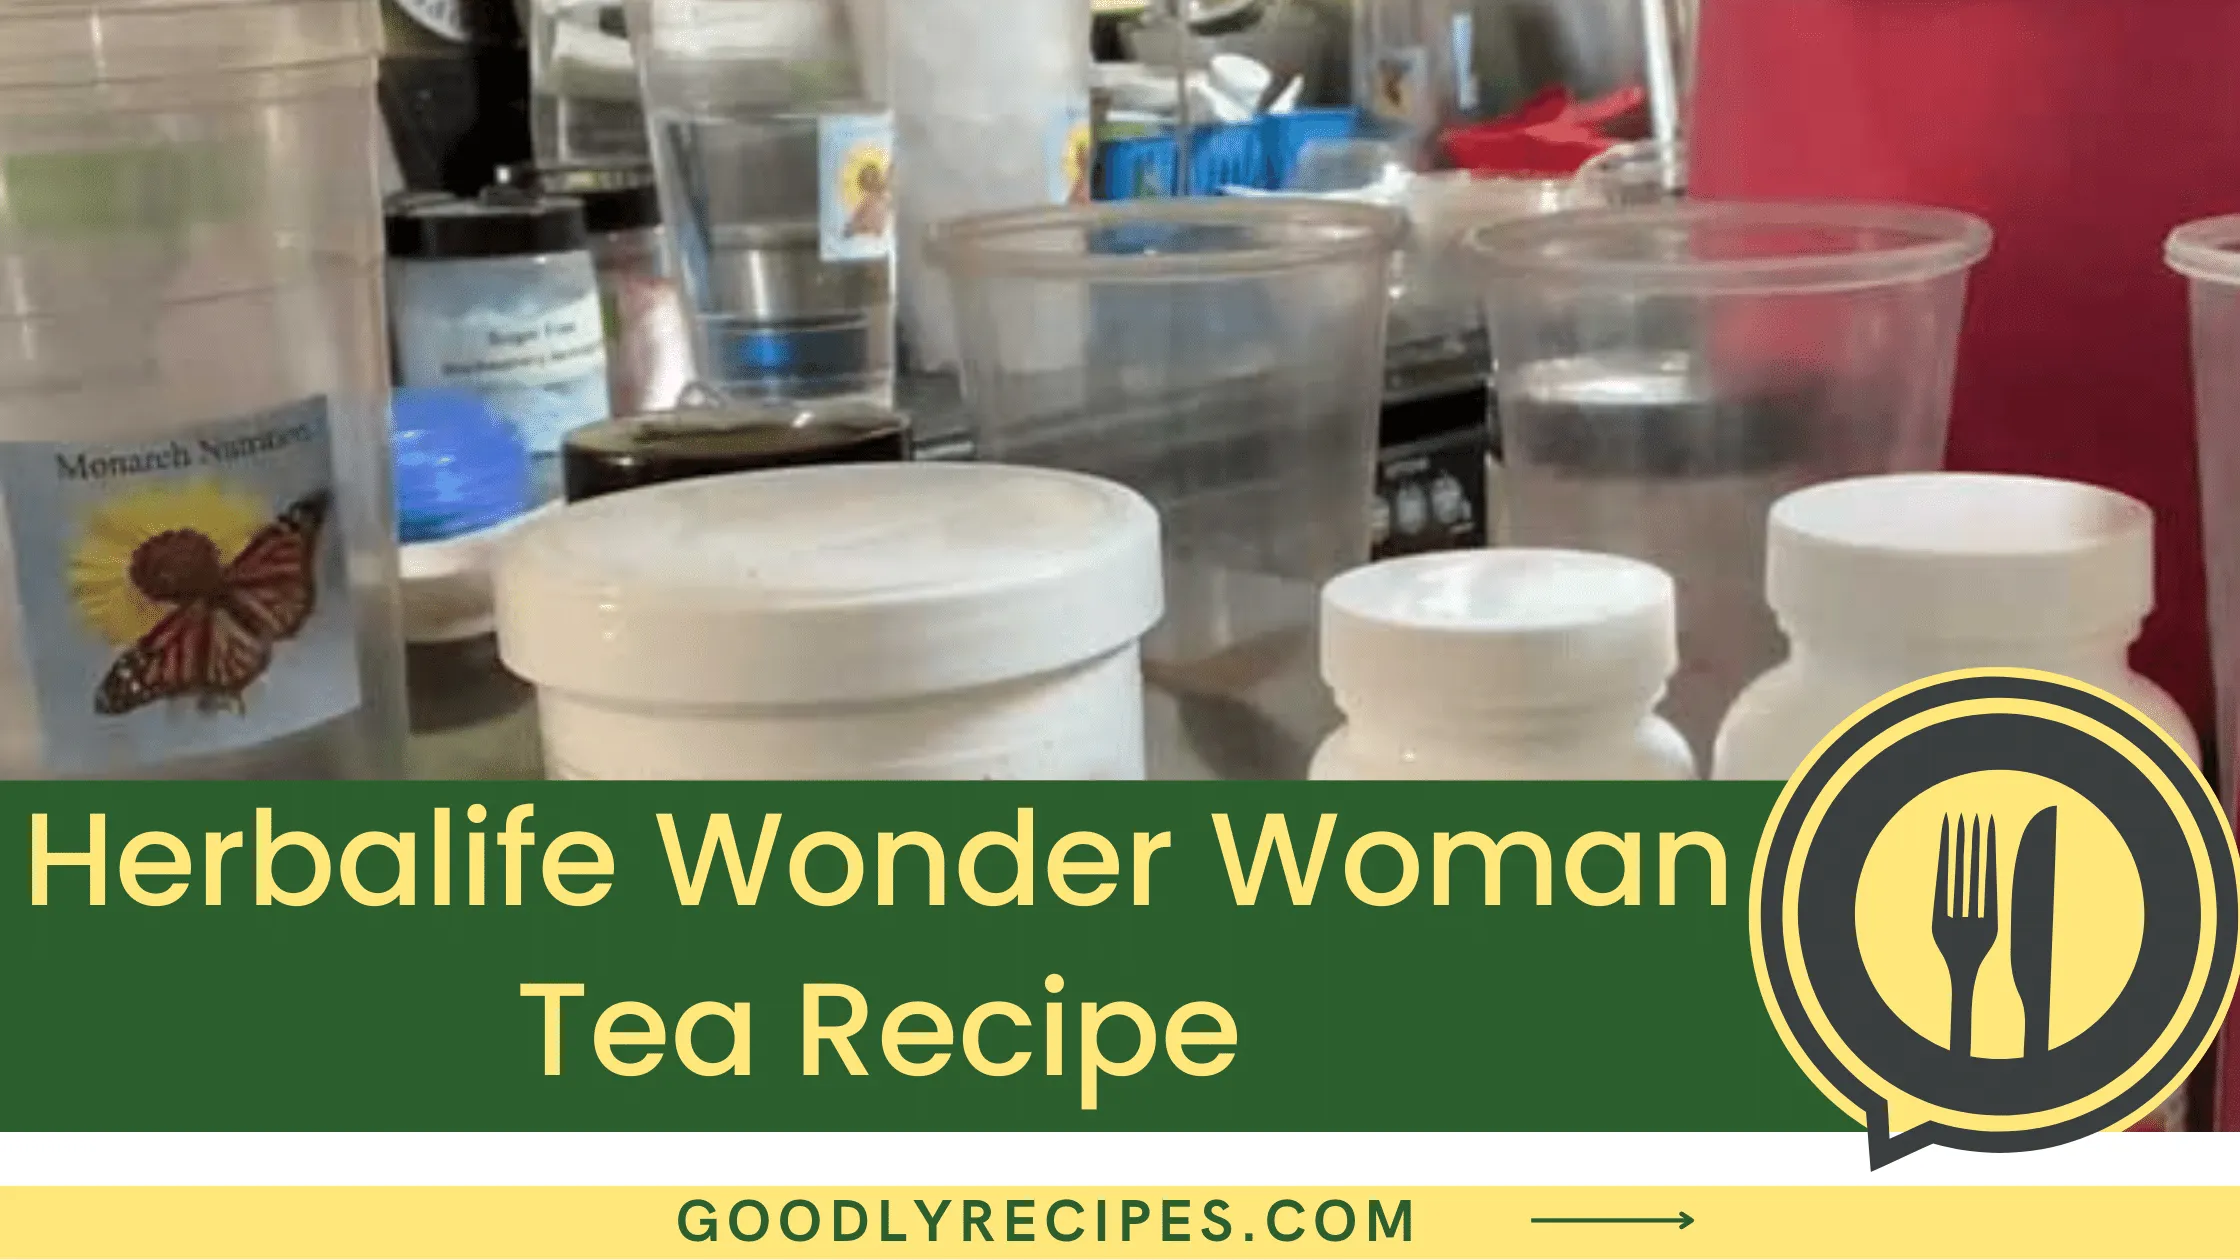 What is Herbalife Wonder Woman Tea?